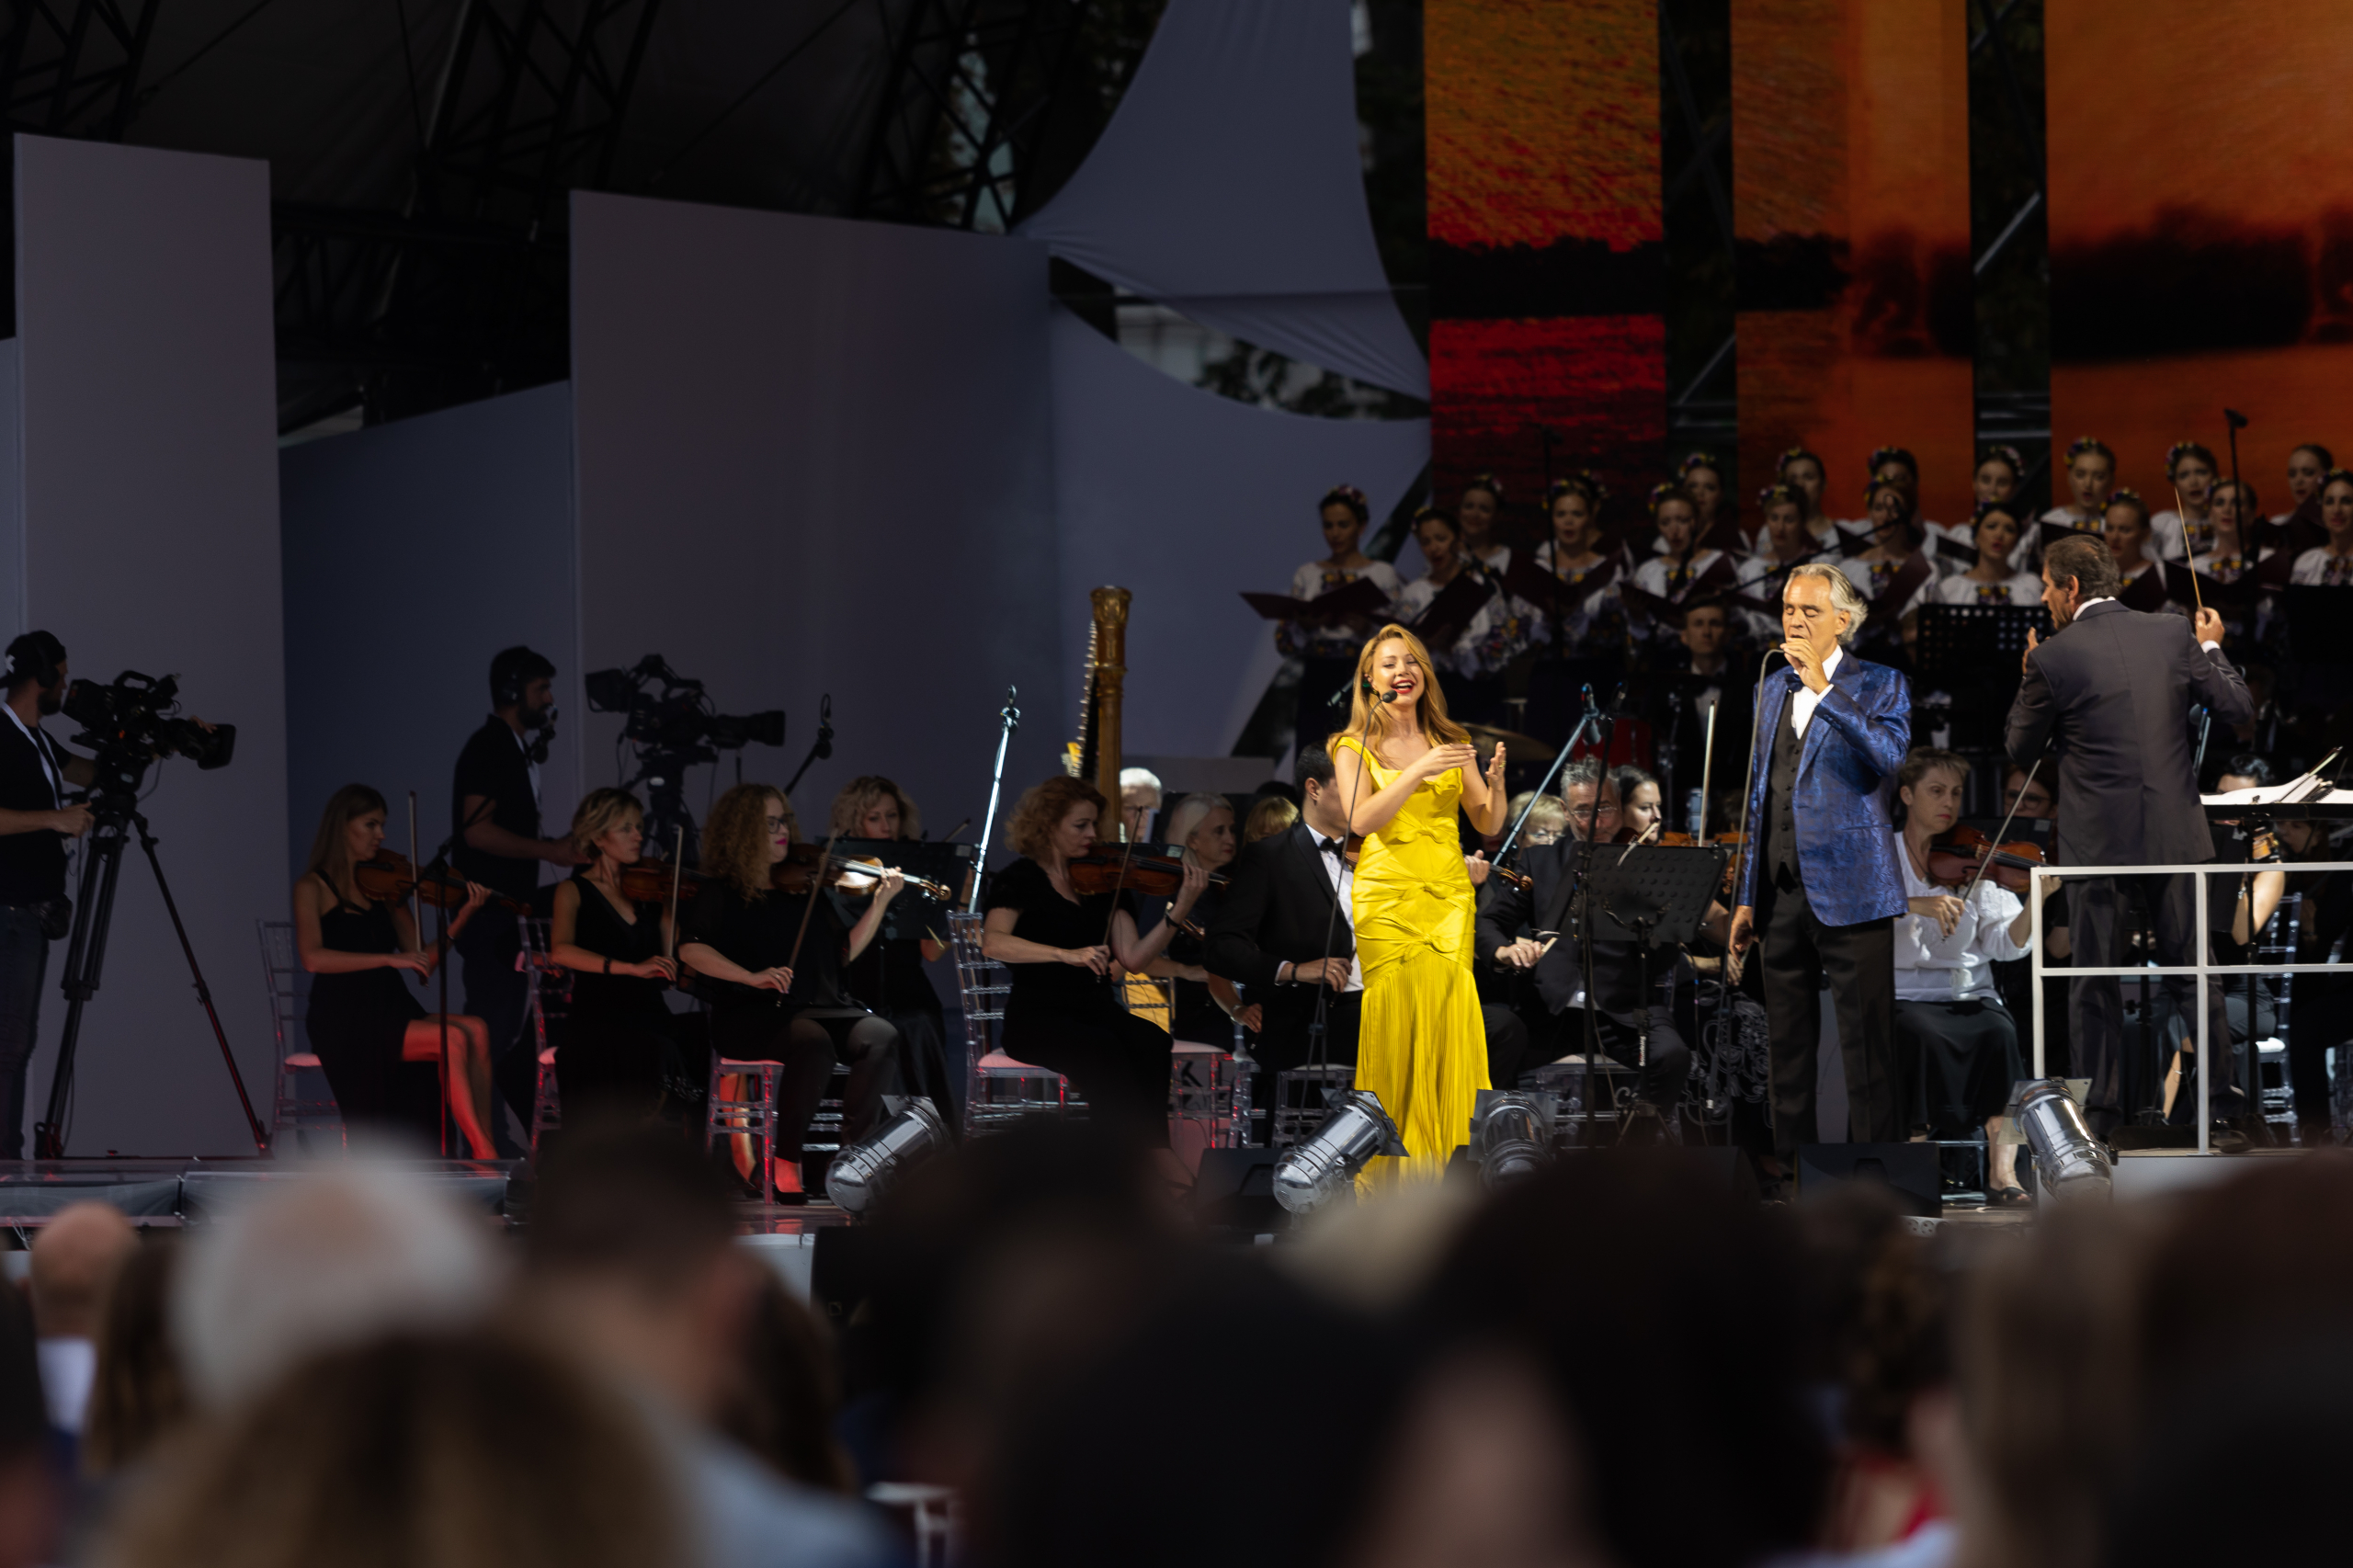 «Голос моєї душі»: благодійний концерт Андреа Бочеллі біля Маріїнського палацу